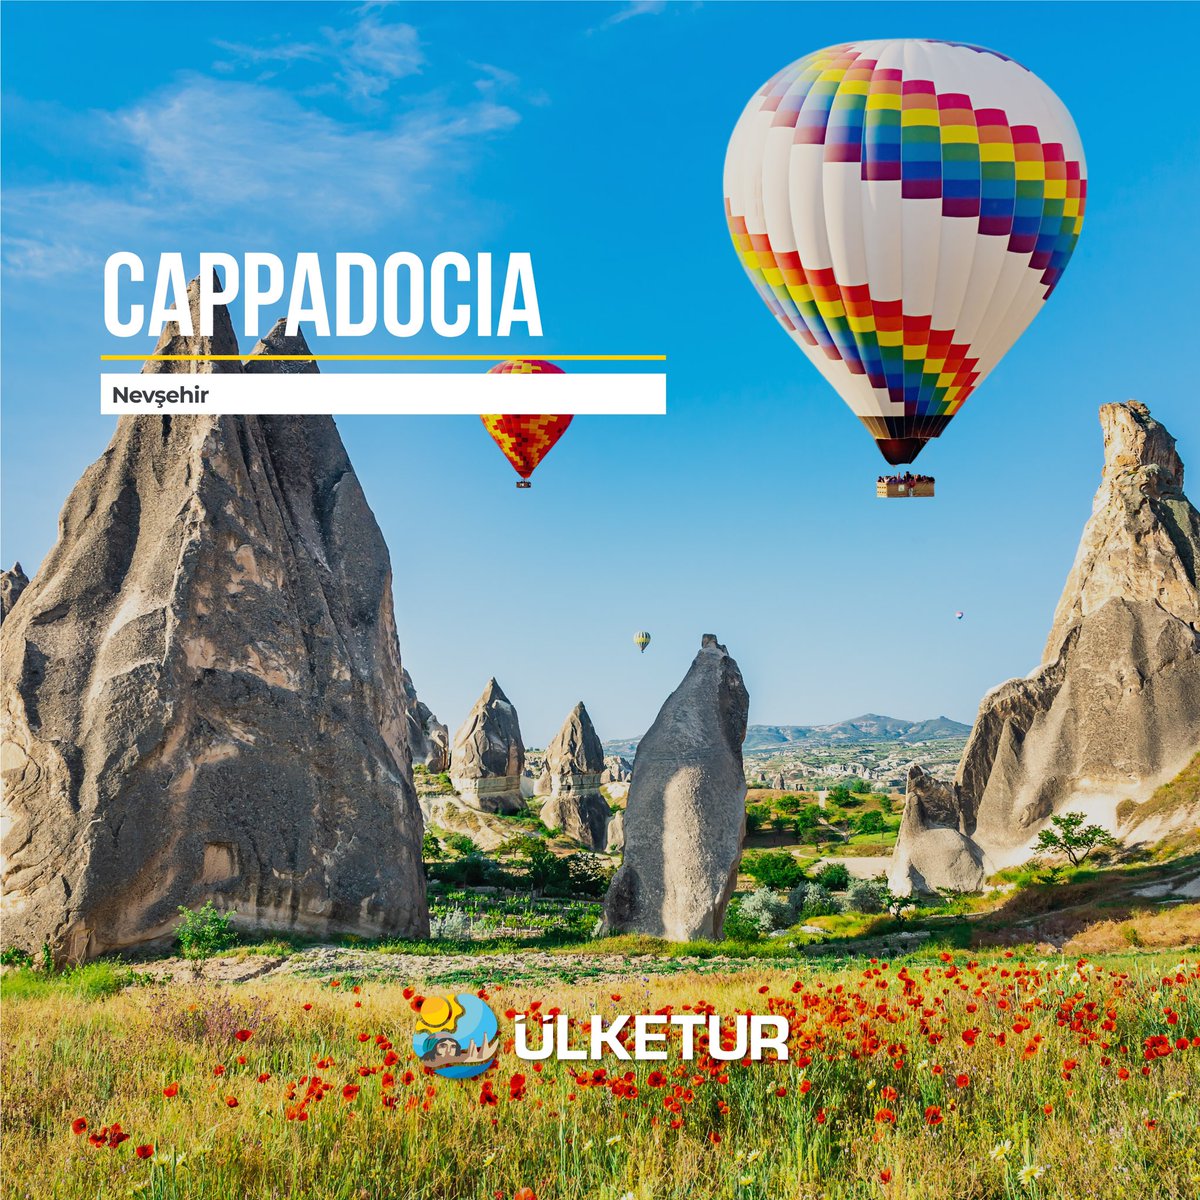 🪂 Kapadokya’nın muhteşem çiçeklerini bulutların üzerinden görün.

See the amazing flowers of Cappadocia up on the skies.
 
#ÜlkeTur #Türkiye #Kapadokya #cappadocia #HotAirBalloons  #Travel #Experience #FairyChimneys